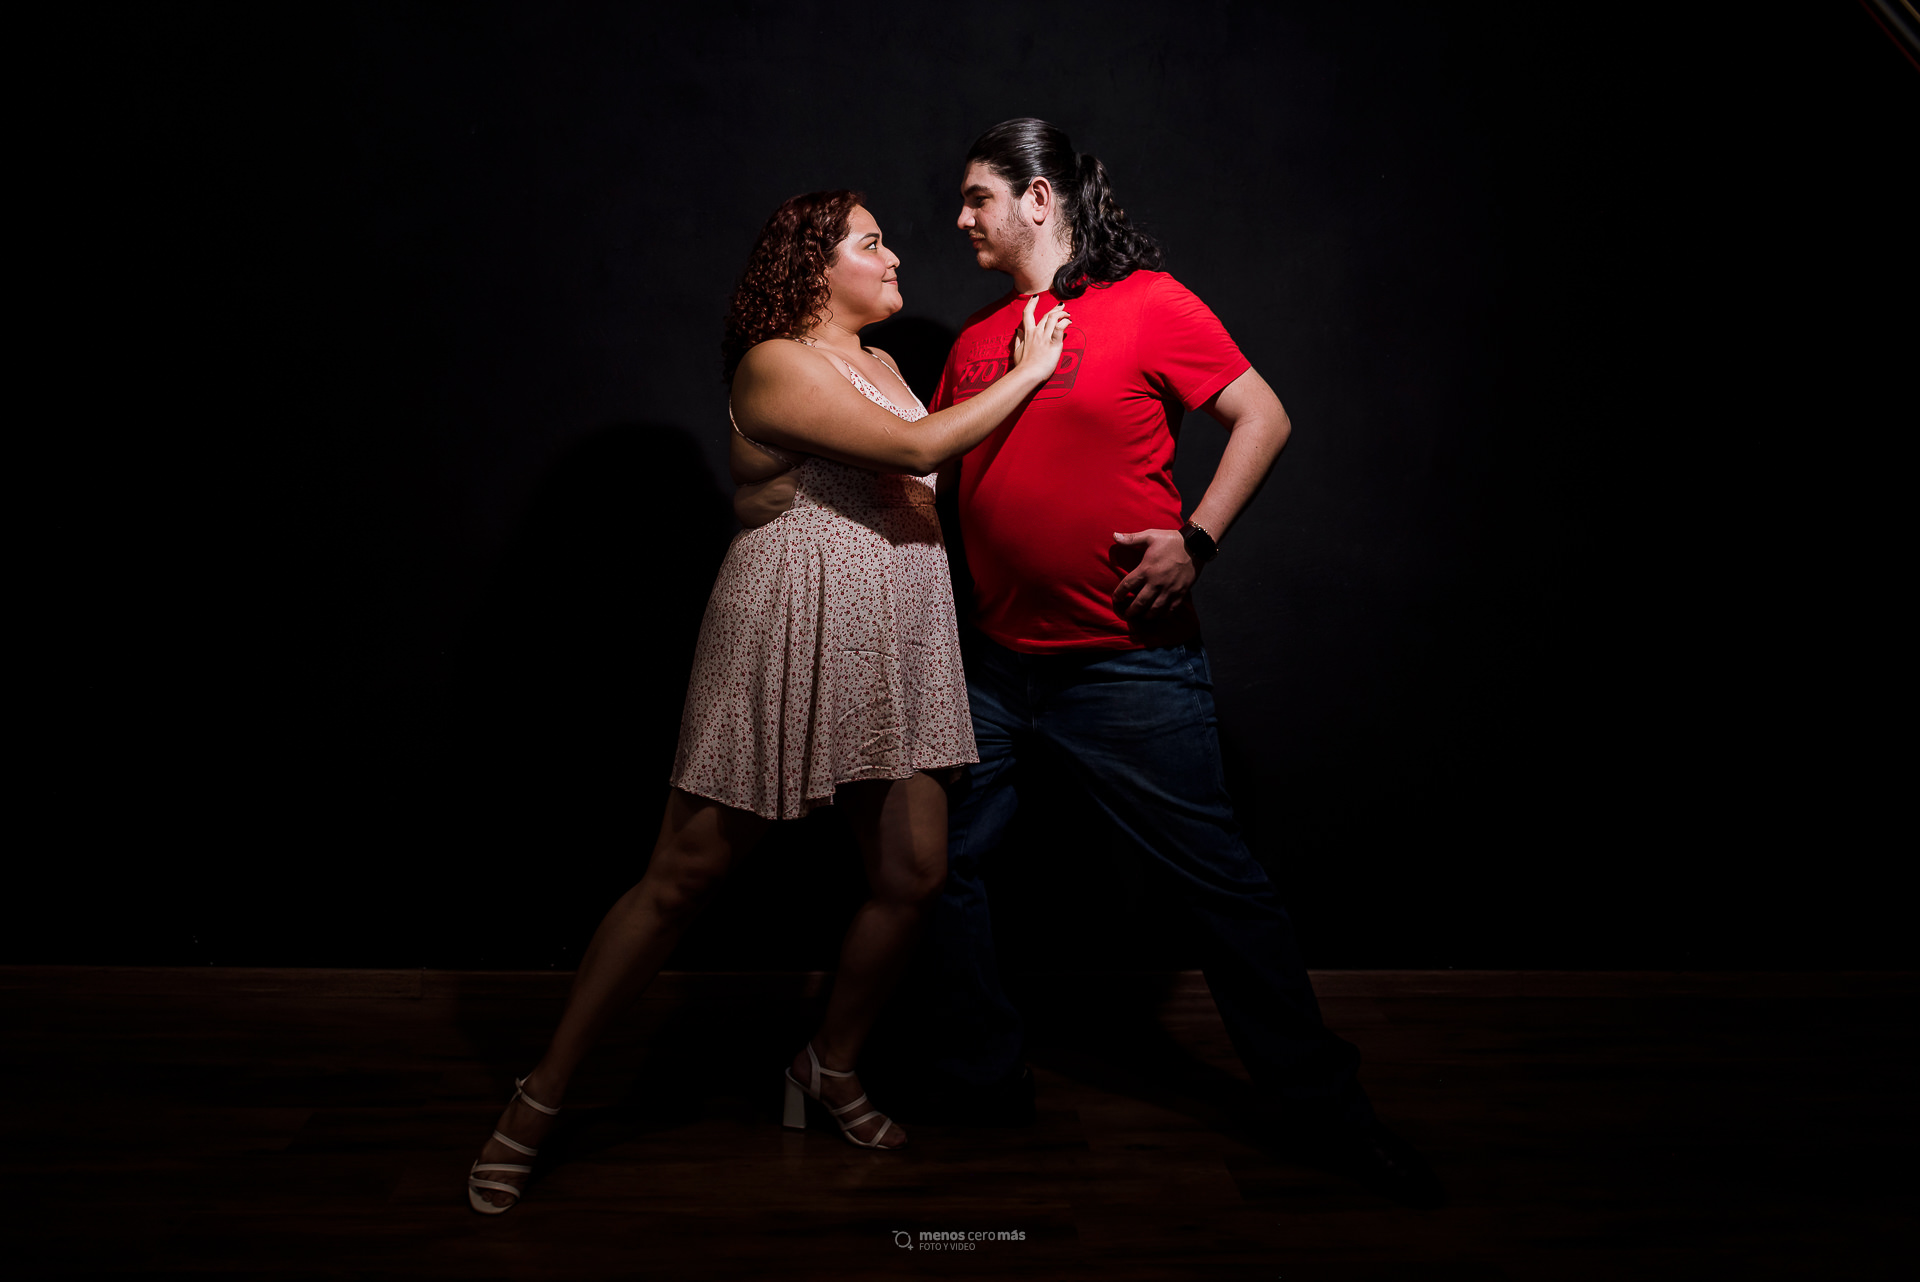 Fotografía de Laura y Gil realizando una pose de tango clásico en una sesión informal en la Escuela de Tango Monterrey, iluminados por una única luz en la oscuridad.